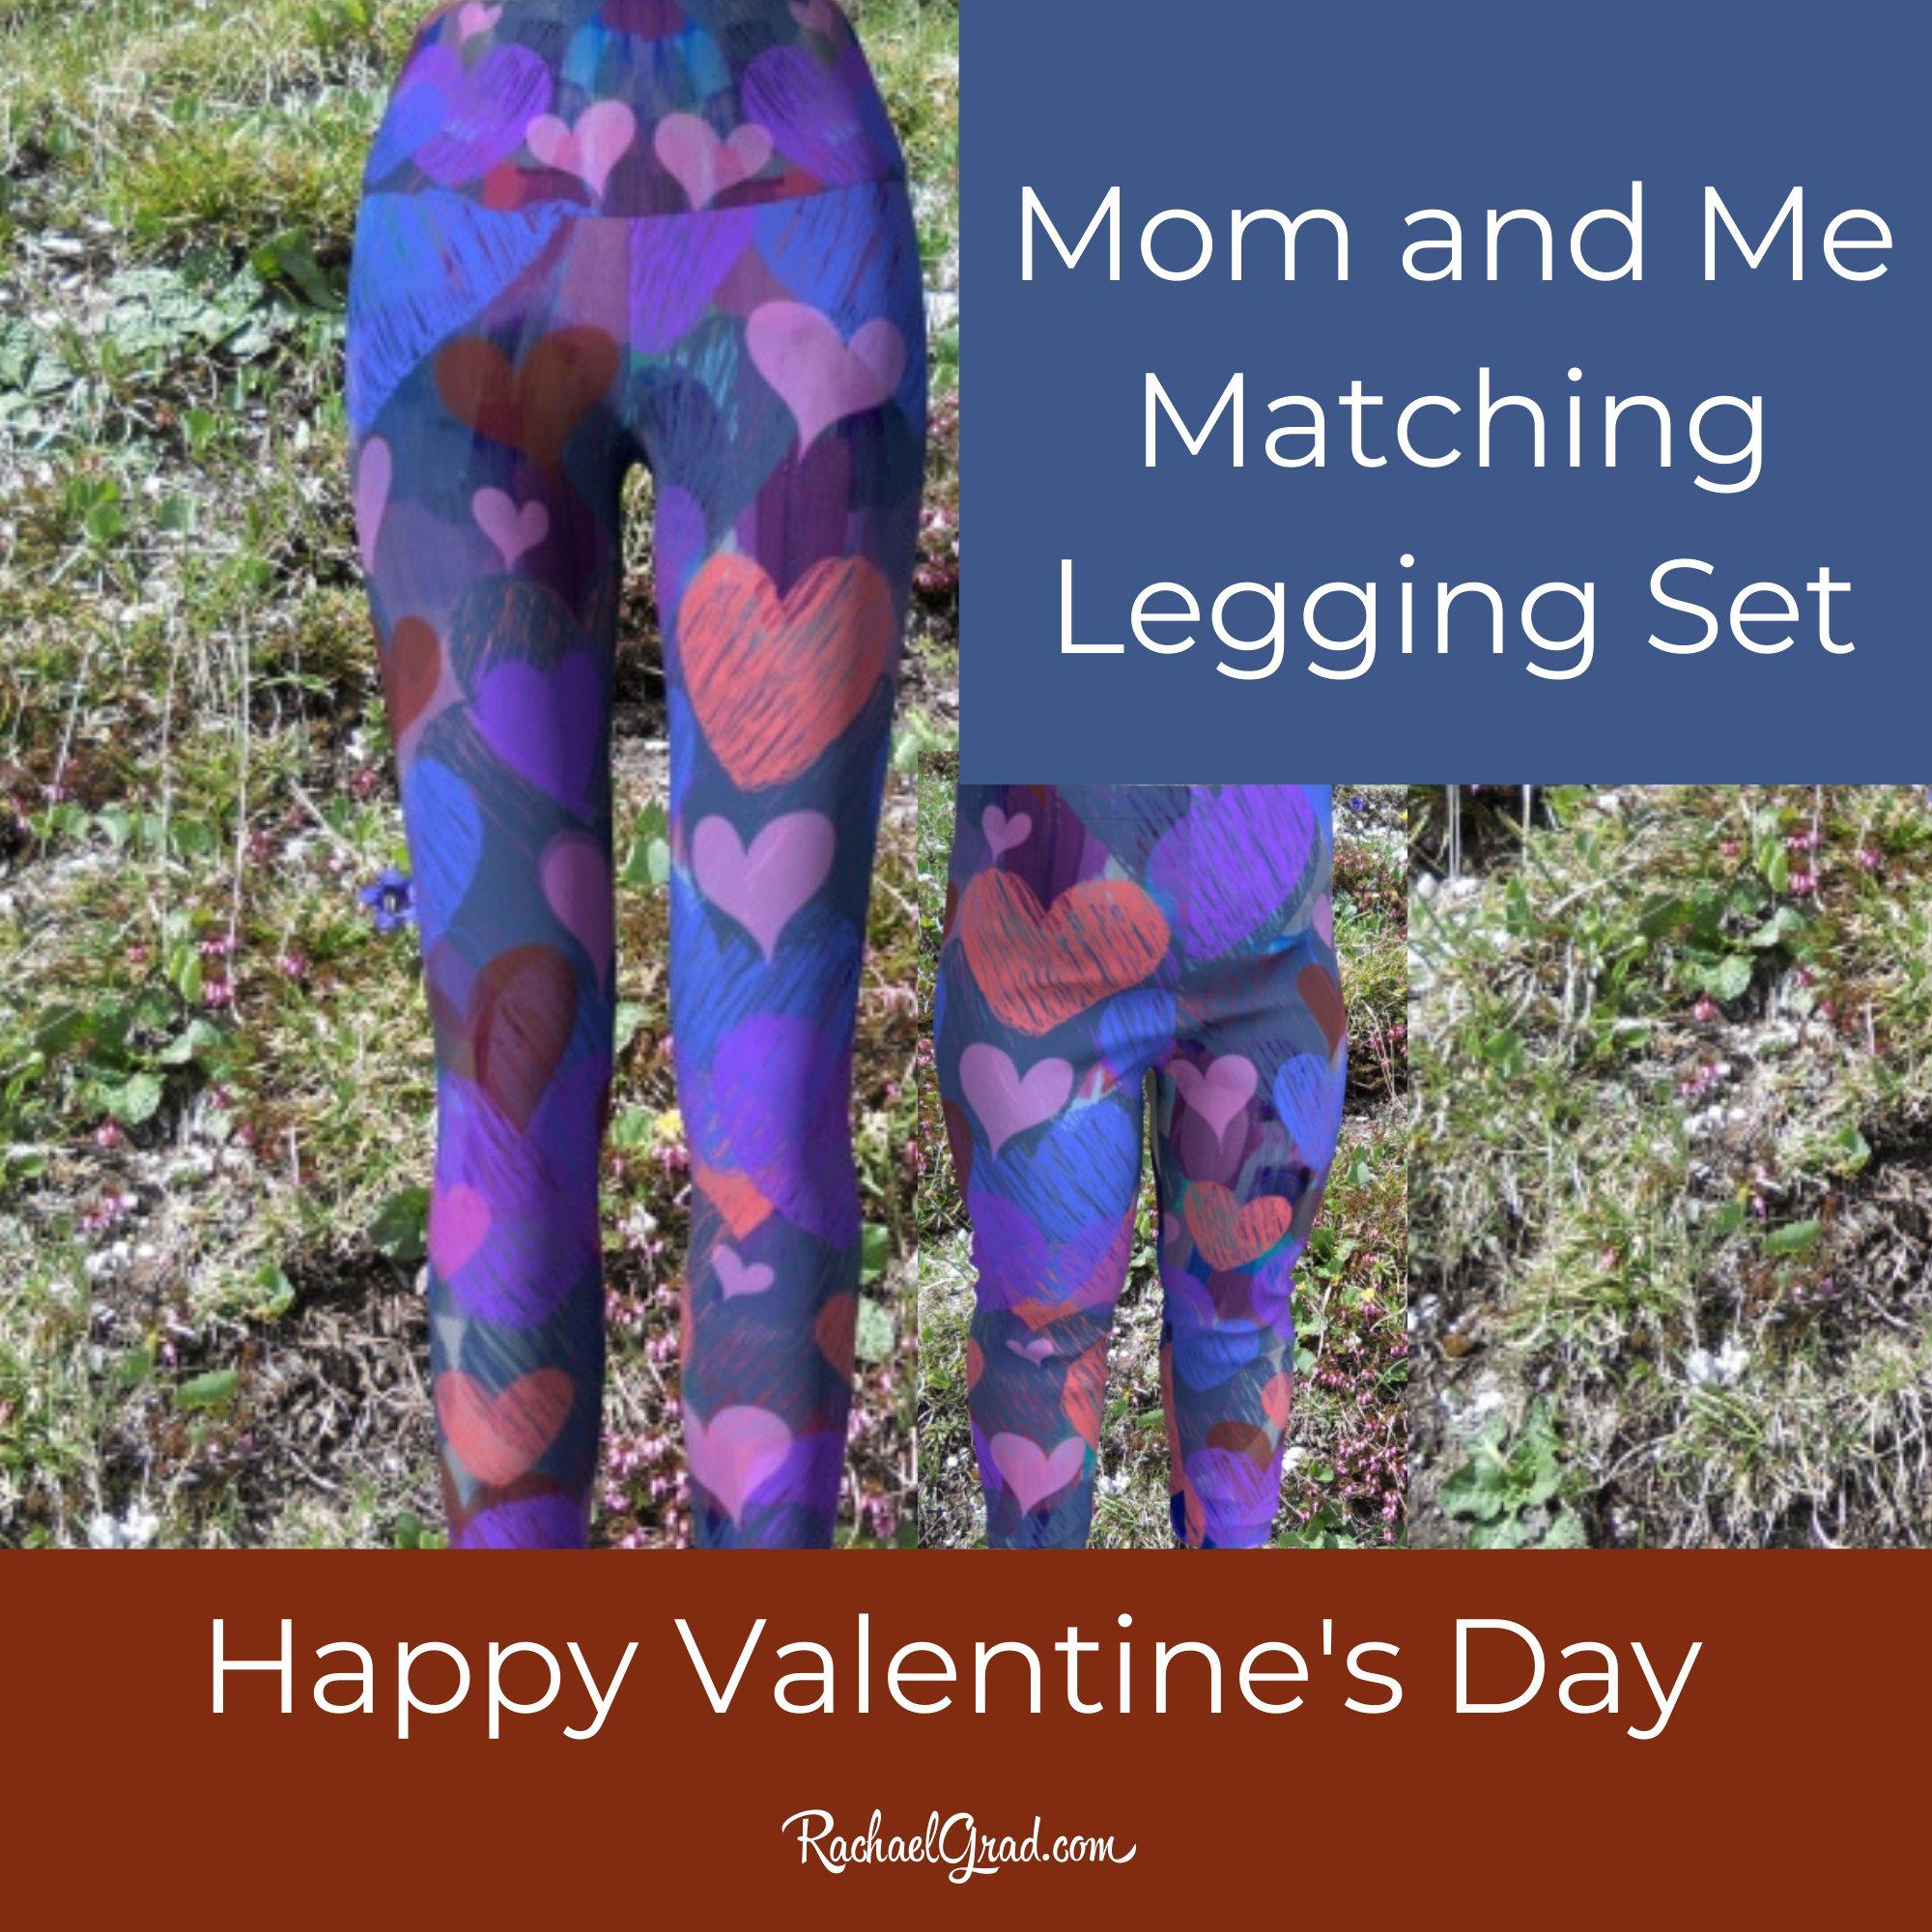 LuLaRoe Hearts Active Pants, Tights & Leggings